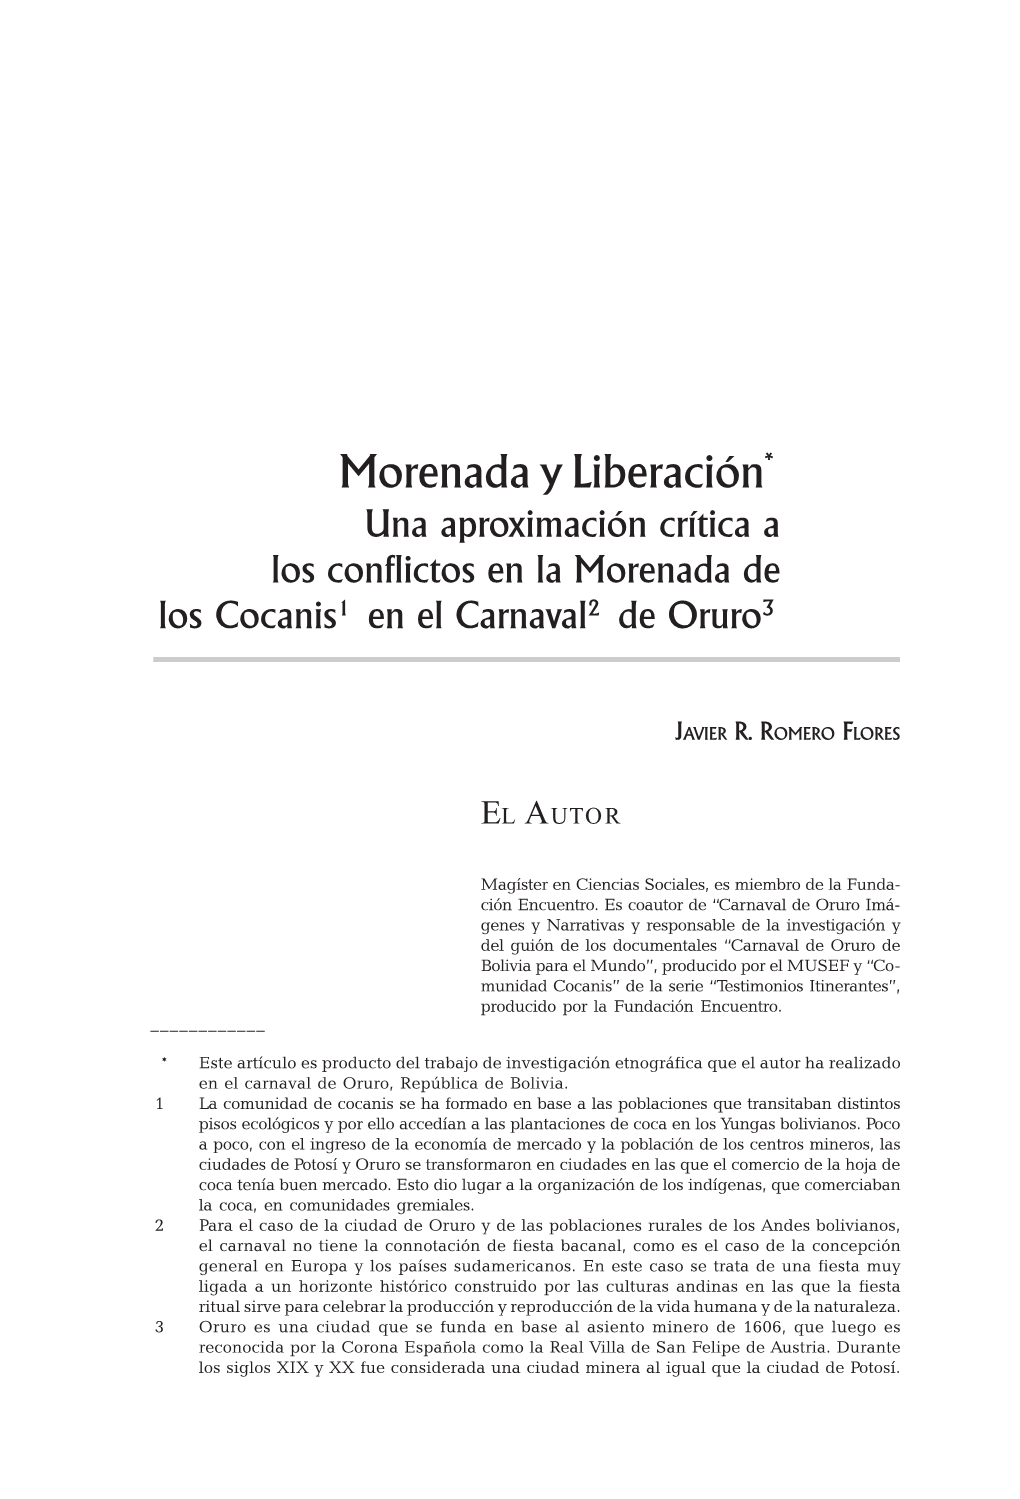 Morenada Y Liberación* Una Aproximación Crítica a Los Conflictos En La Morenada De Los Cocanis1 En El Carnaval2 De Oruro3